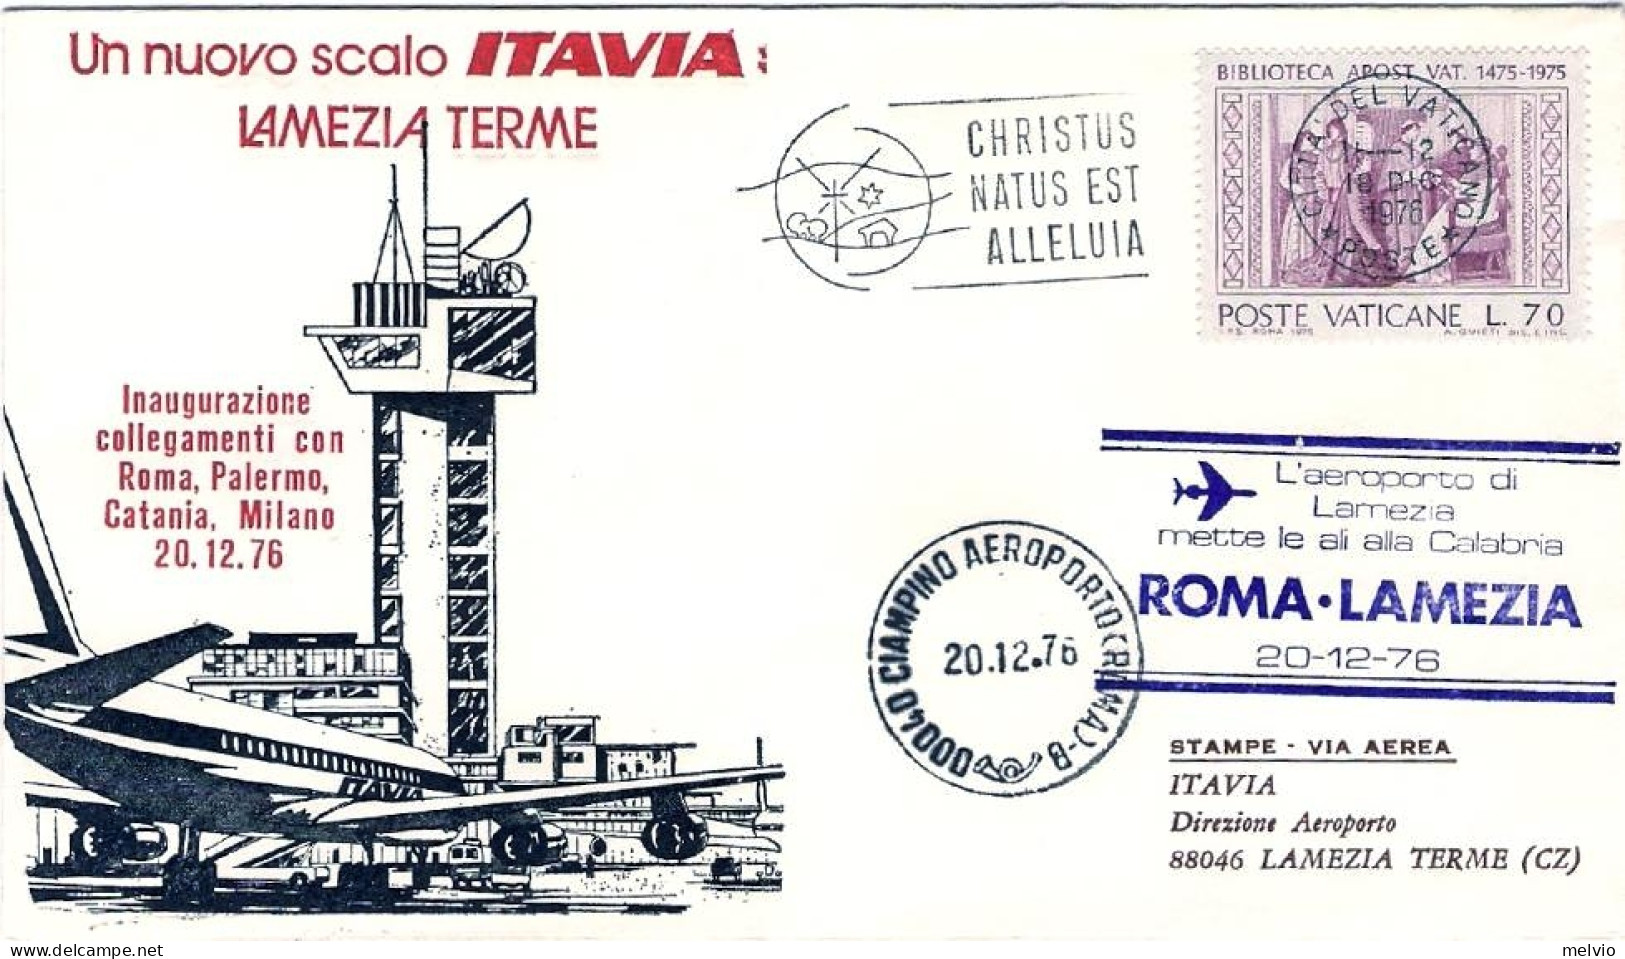 Vaticano-1976 Con Bollo L'aeroporto Di Lamezia Terme Mette Le Ali Alla Calabria  - Airmail